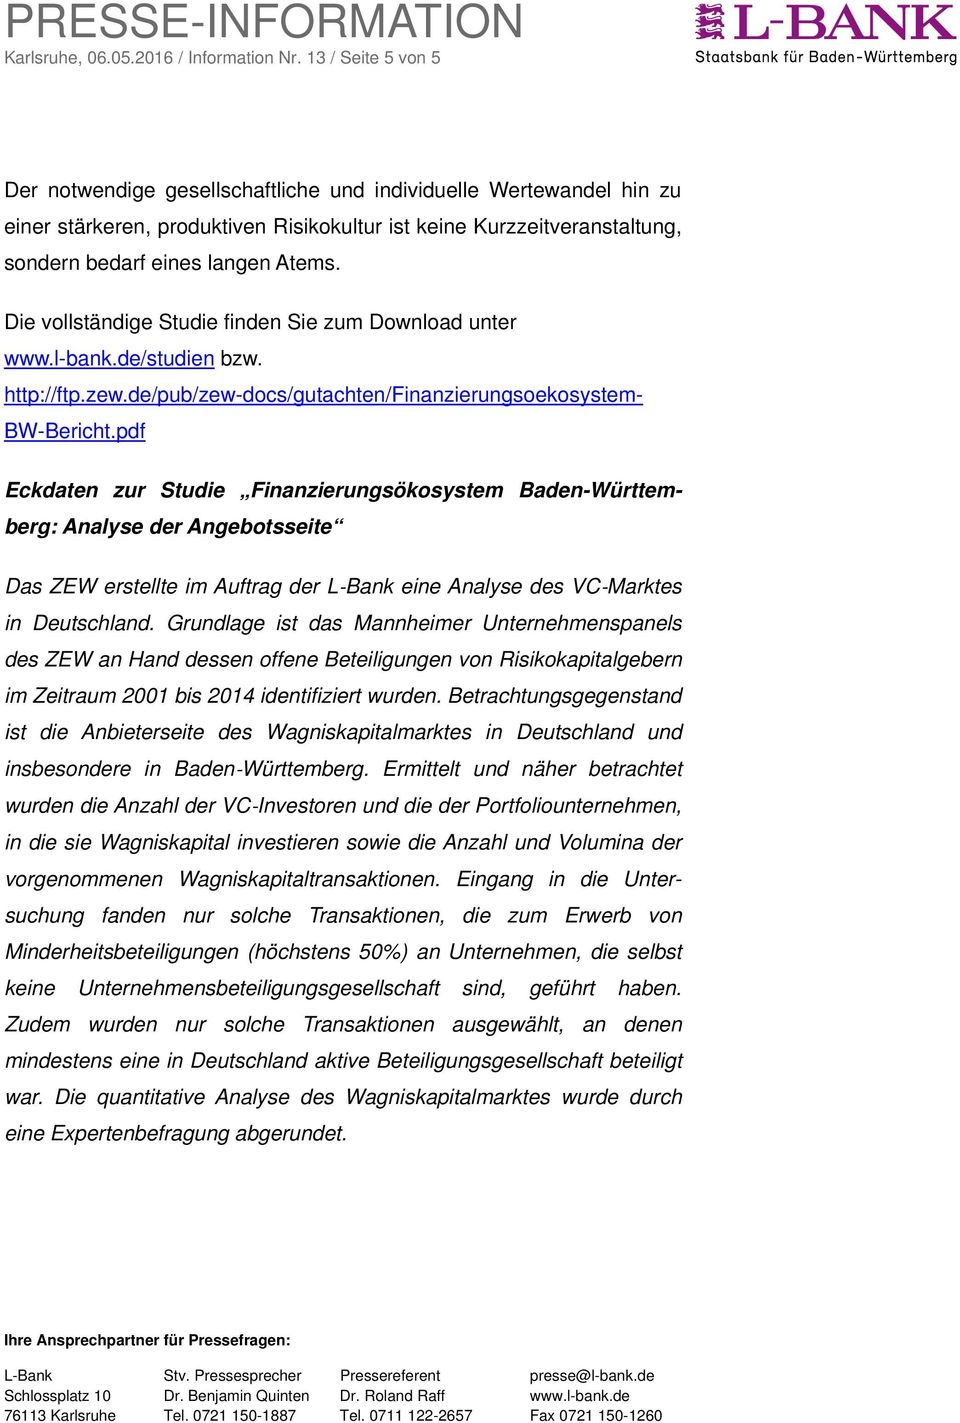 Die vollständige Studie finden Sie zum Download unter www.l-bank.de/studien bzw. http://ftp.zew.de/pub/zew-docs/gutachten/finanzierungsoekosystem- BW-Bericht.